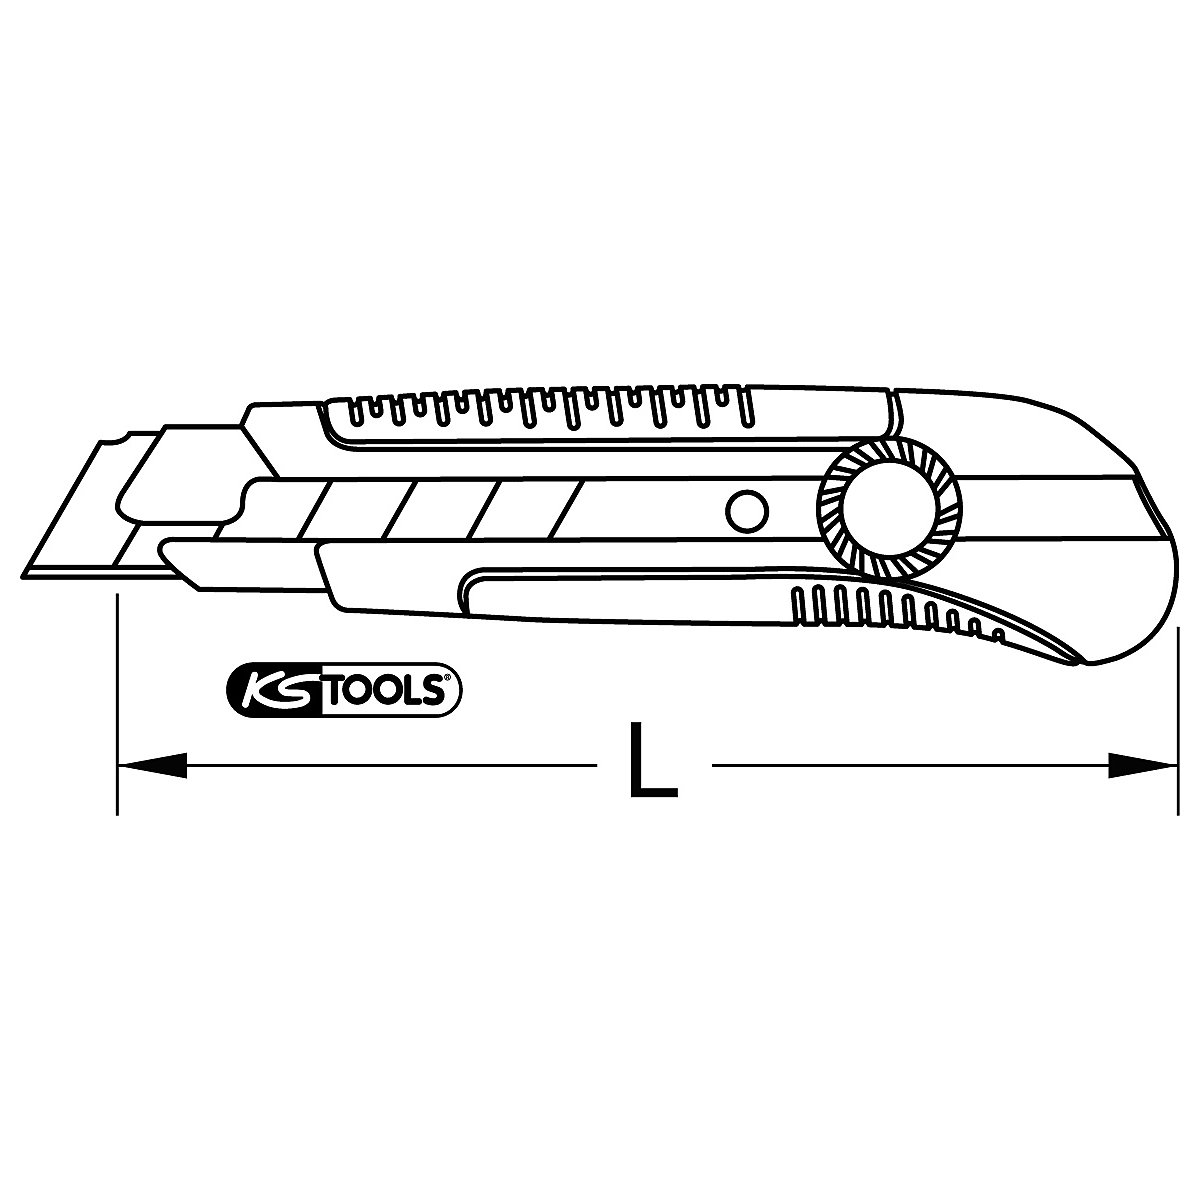 Komfort-Abbrechklingen-Messer KS Tools (Produktabbildung 5)-4